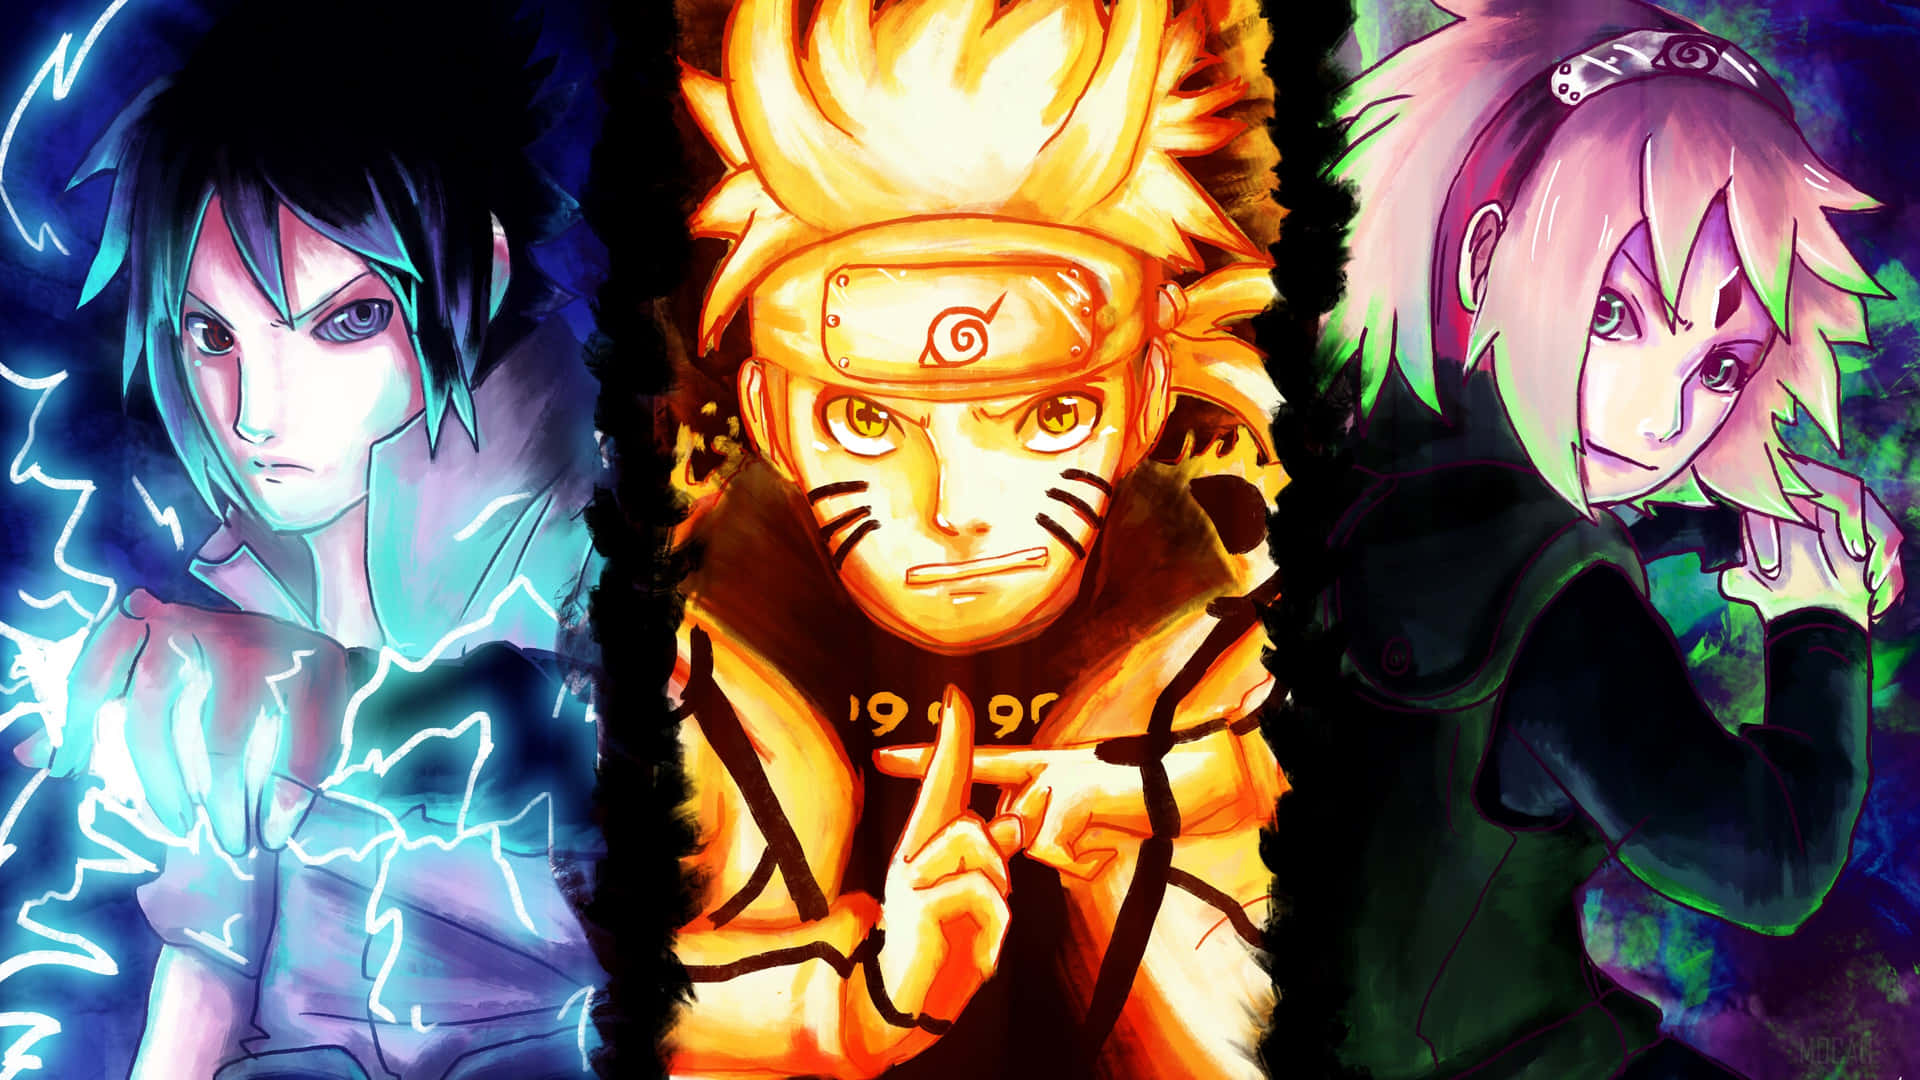 Hình nền điện thoại Naruto Group Wallpaper: Nếu bạn muốn khoe phong cách và sở thích về anime của mình, thì hình nền điện thoại Naruto Group Wallpaper sẽ làm cho chiếc điện thoại của bạn trở nên đẹp mắt và độc đáo. Với những hình ảnh của tất cả các nhân vật đáng yêu trong Naruto, bạn sẽ không muốn bỏ lỡ sự lựa chọn này.